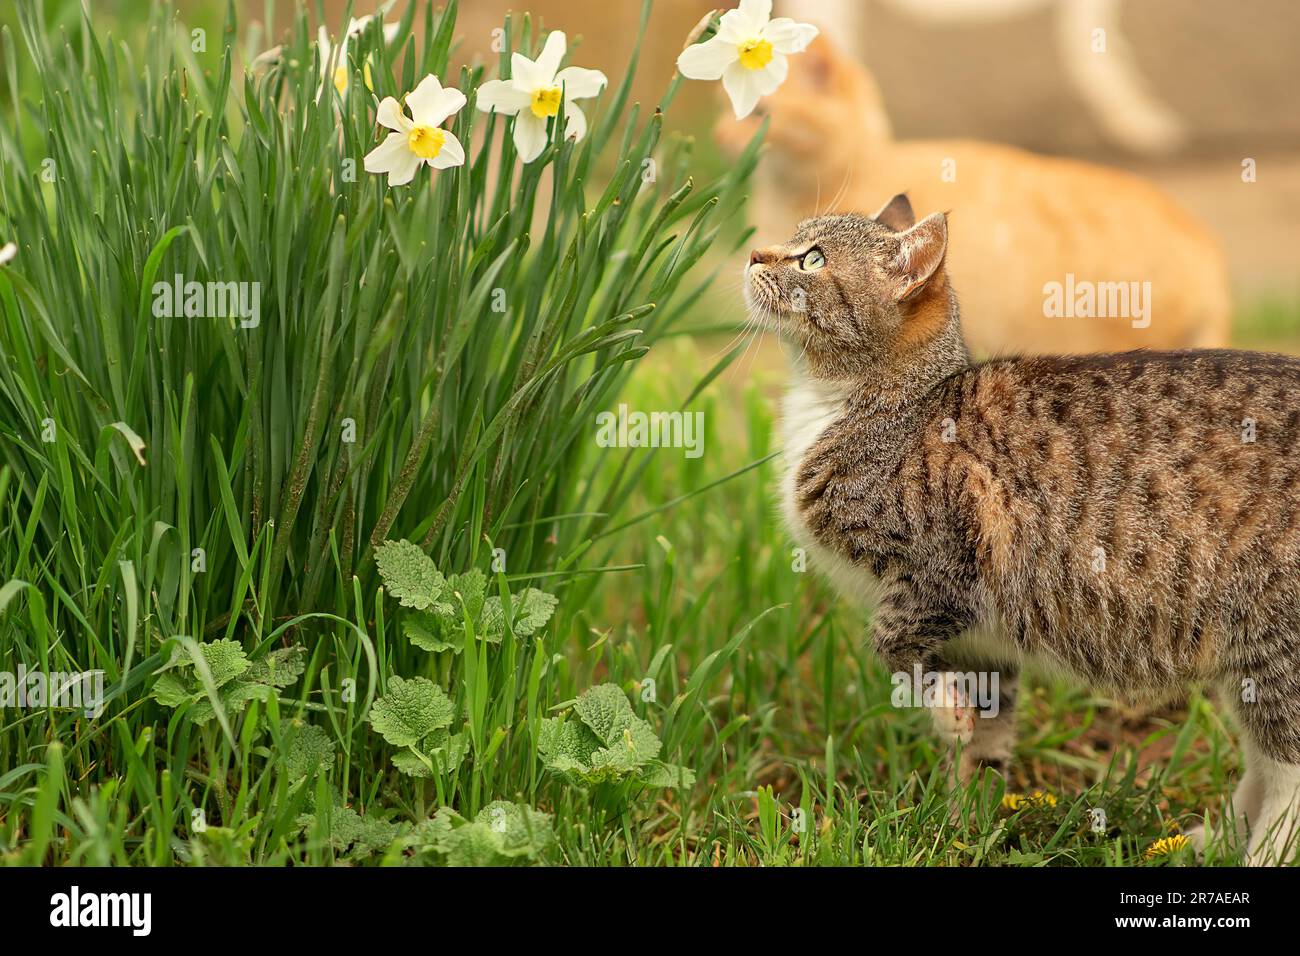 une maison enceinte, chat rayé étudie les fleurs blanches de printemps des jonquilles, elle est venue à eux, veut les sentir, le chat découvre de nouvelles sensations Banque D'Images